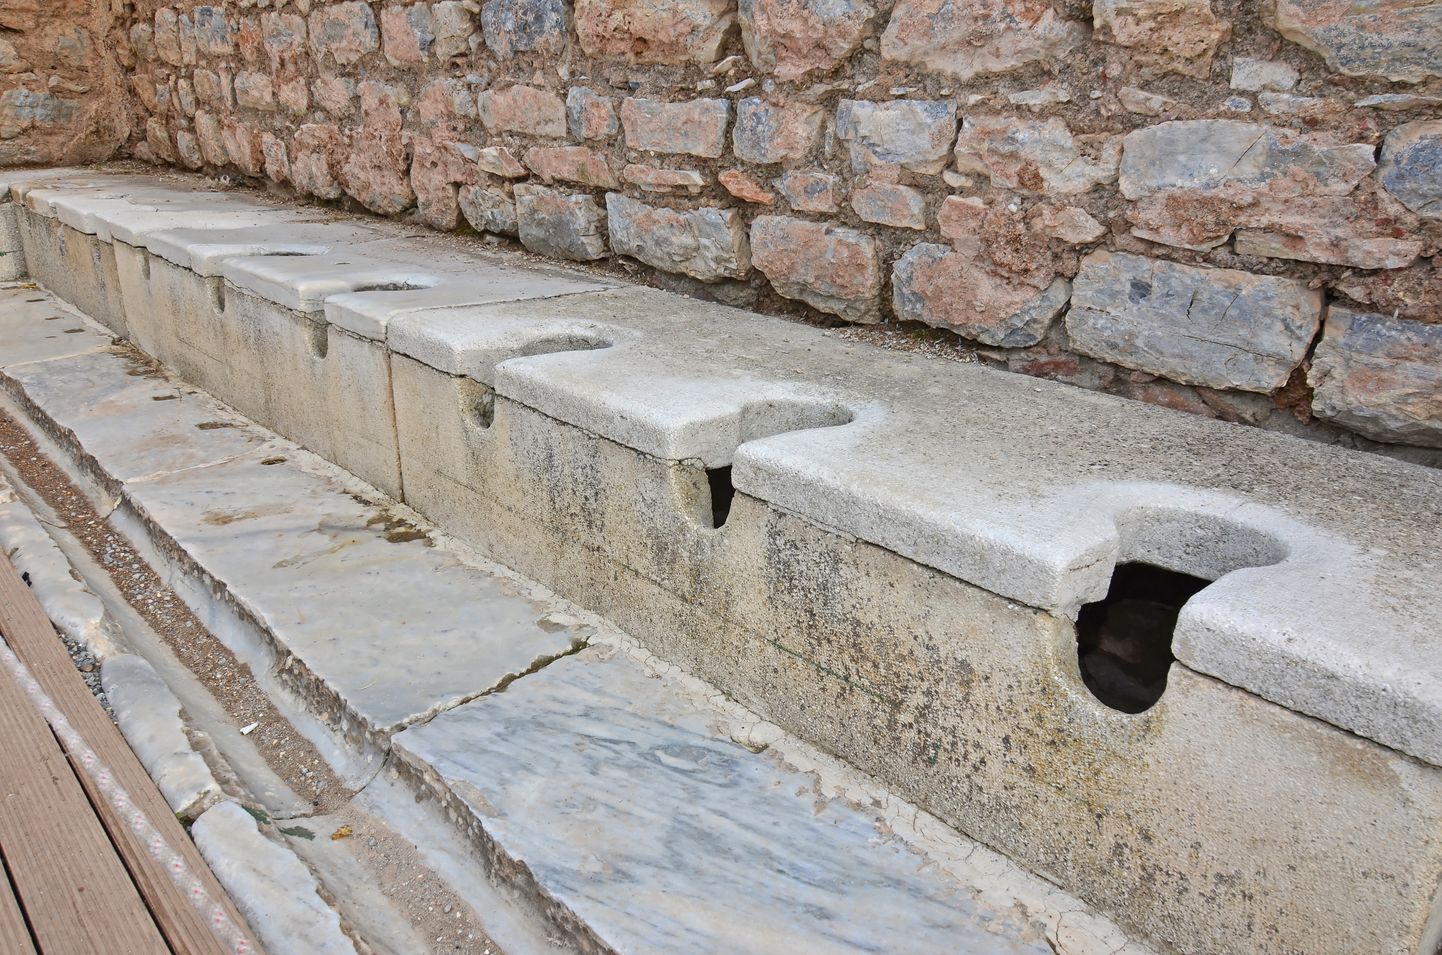 Vana-Rooma latriini jäänused Türgis. Pilt on illustreeriv